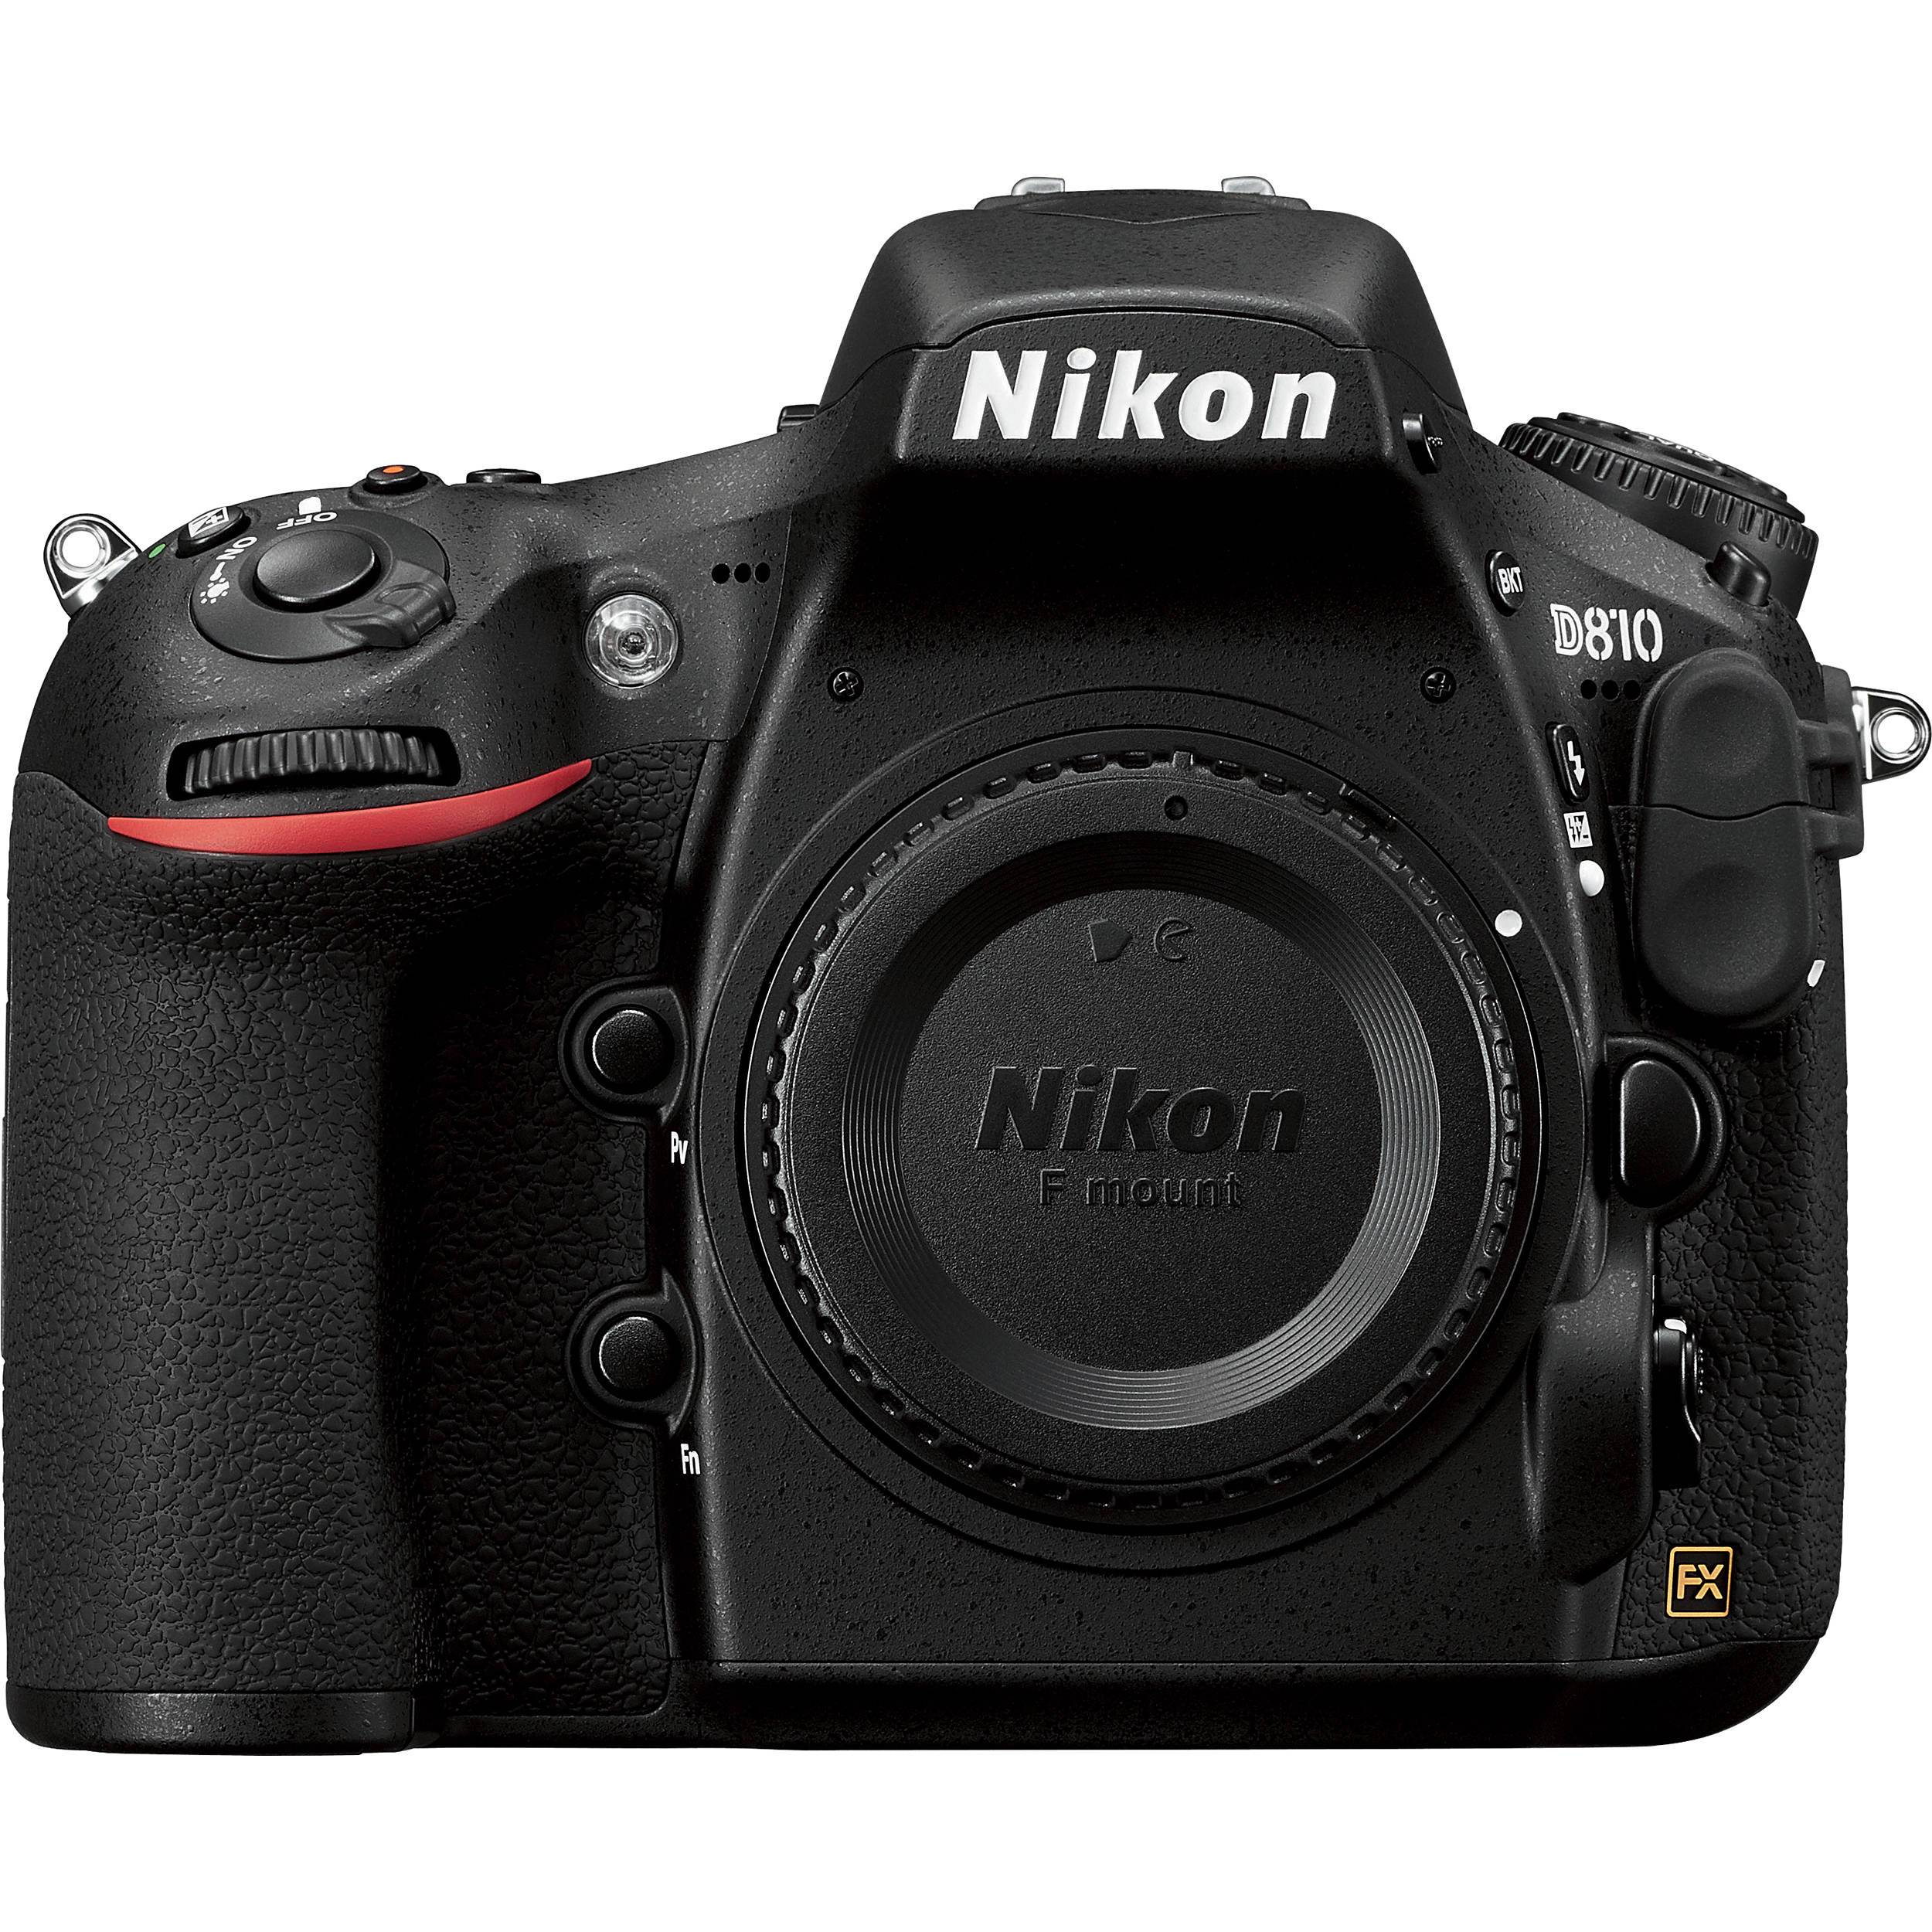 Nikon D810 Full frame - Motion19